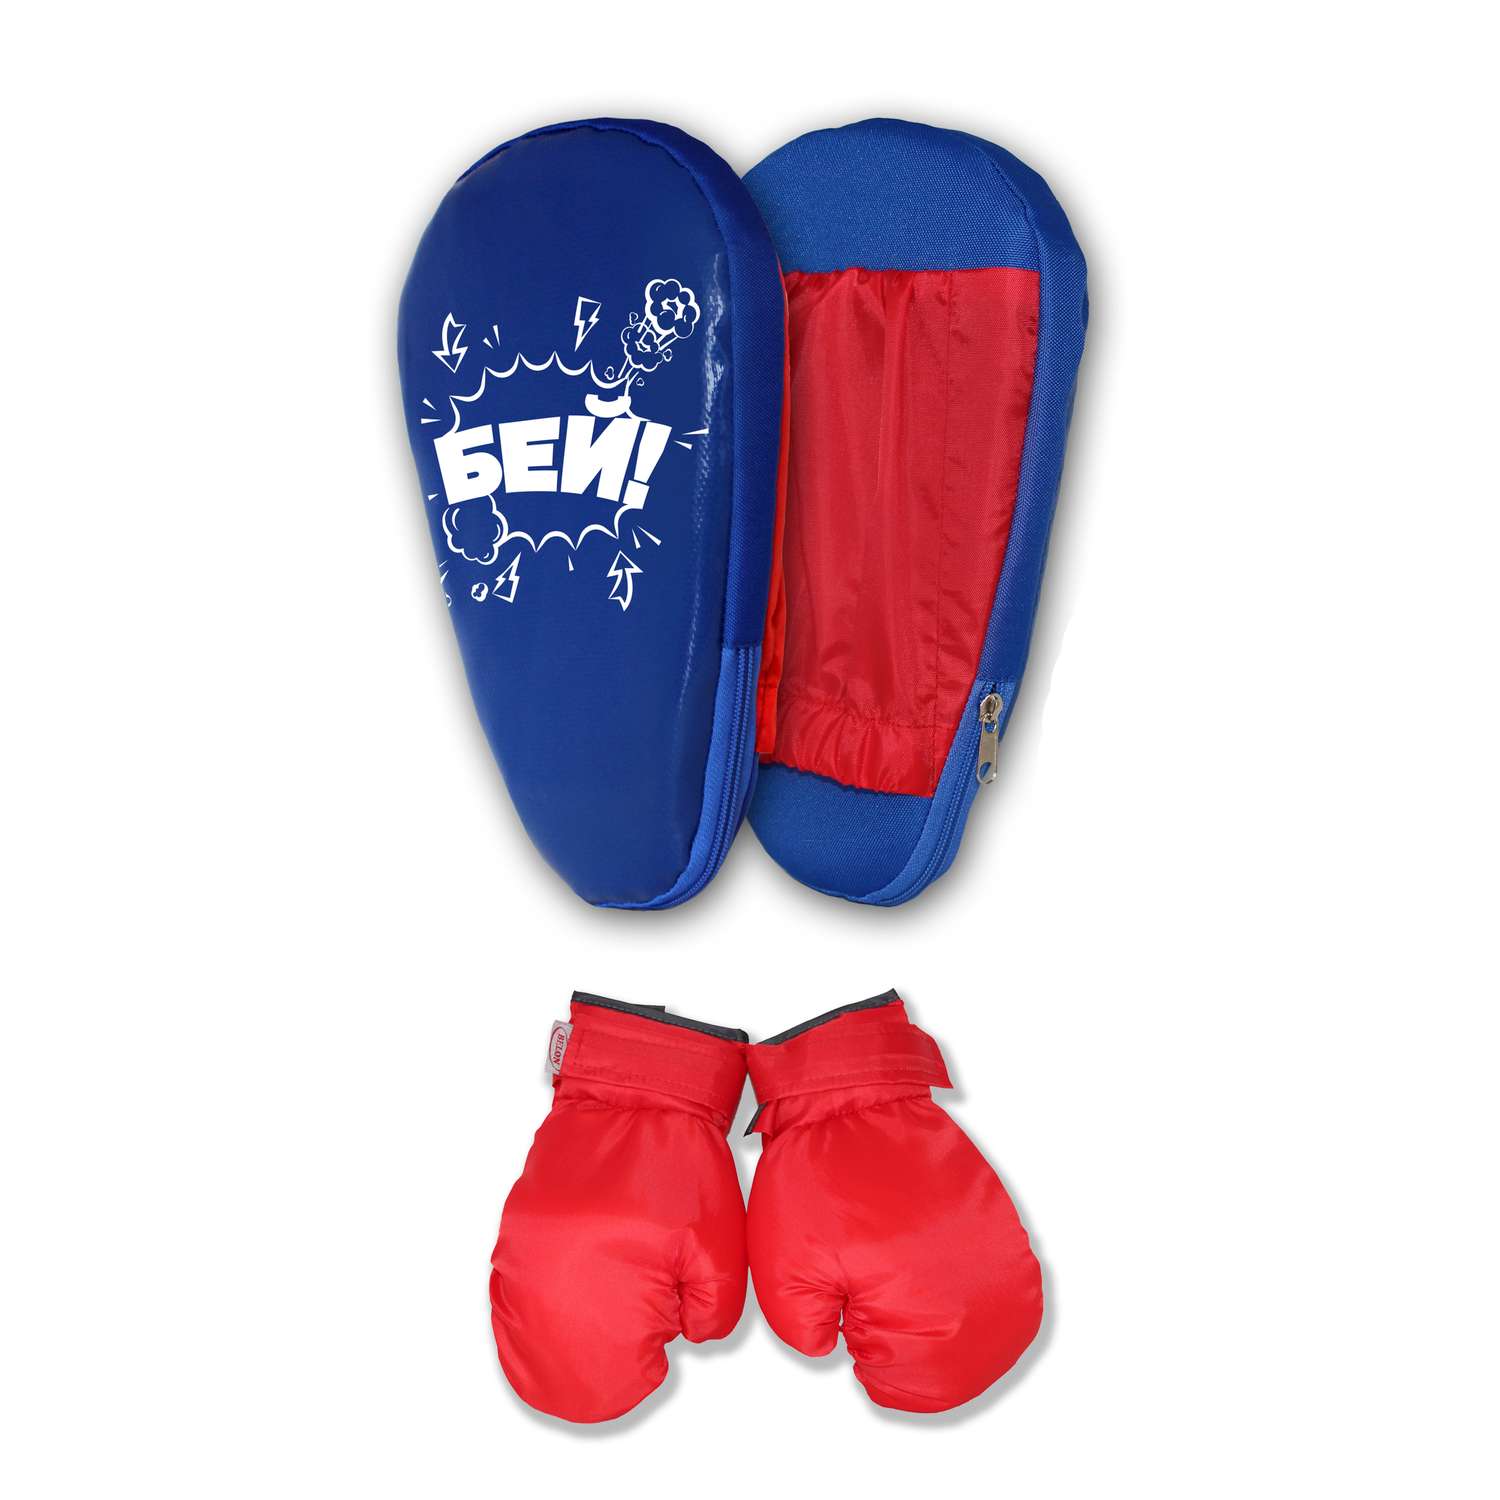 Детский набор для бокса Belon familia лапа боксерская 27х18 х 4см с перчатками цвет с перчатками синий красный с рисунком БЕЙ - фото 1